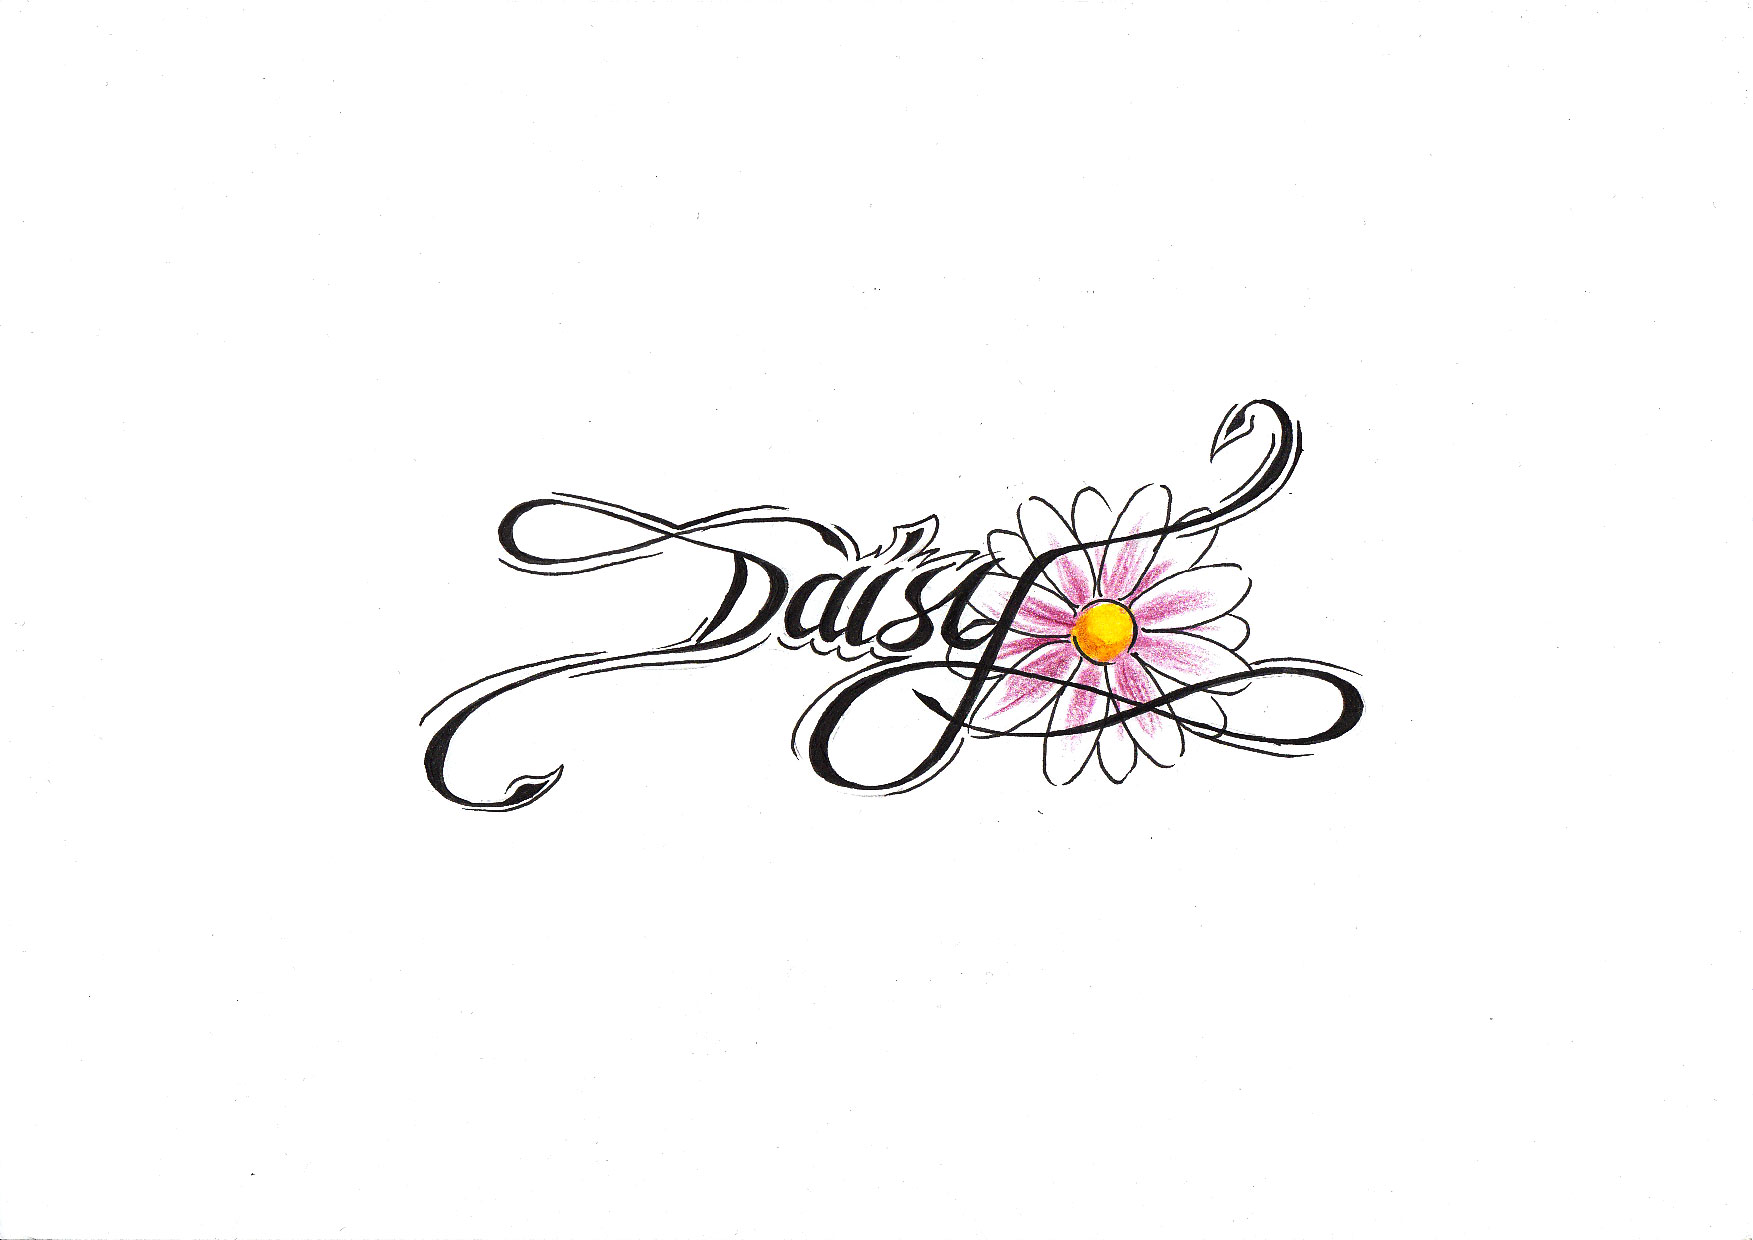 Daisy+tattoo+meaning